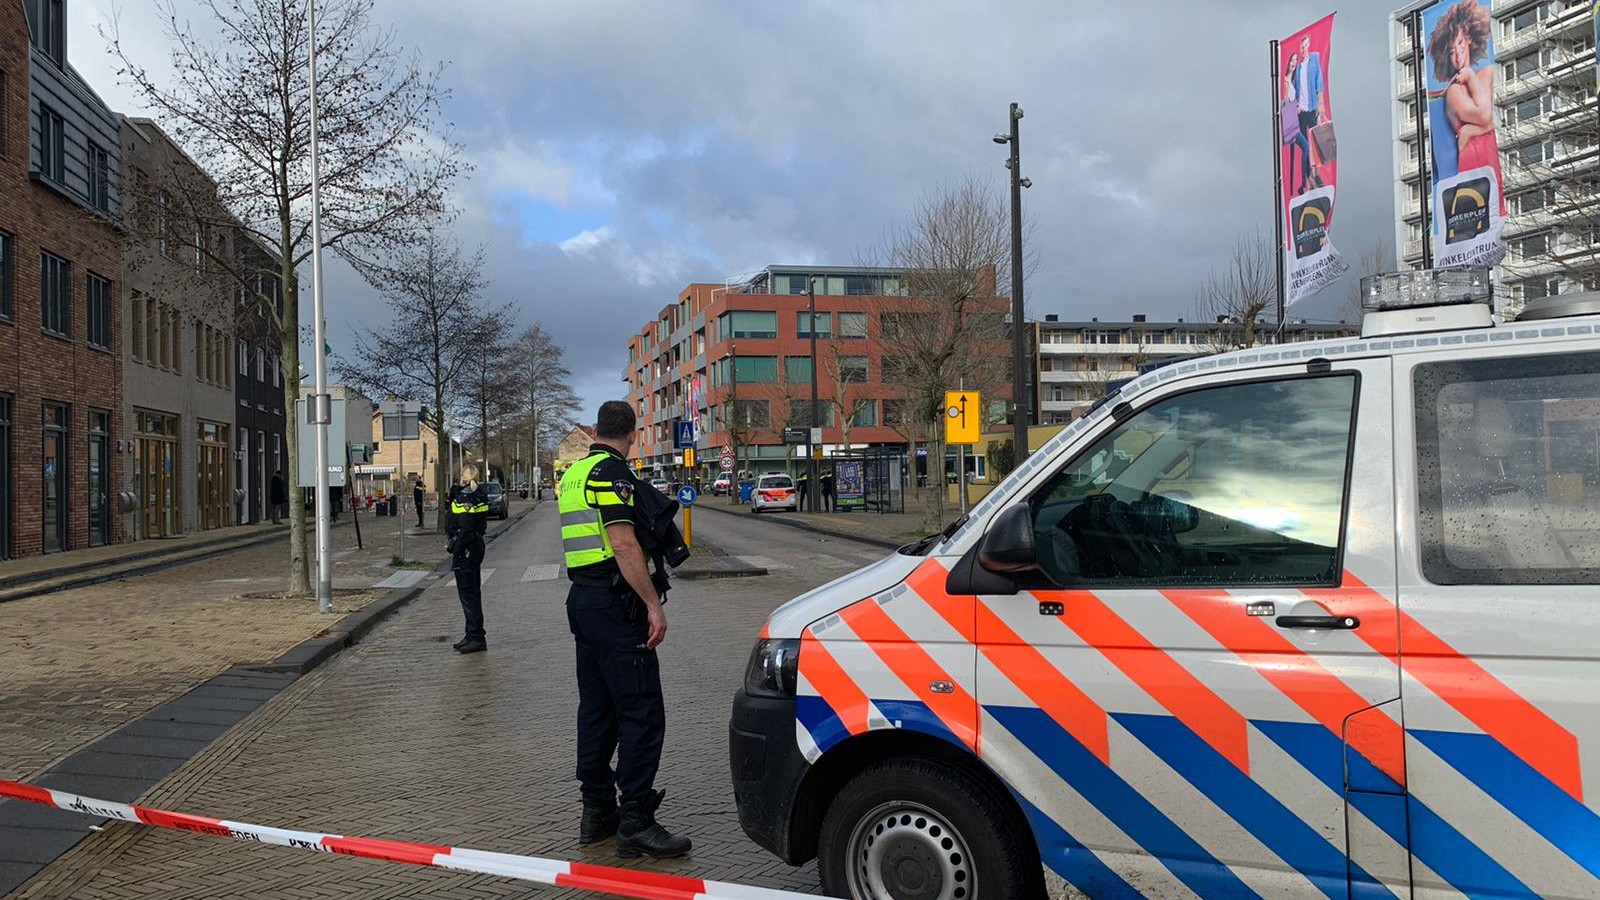 Vermoedelijk explosief bij pand Diemerplein, omgeving afgezet